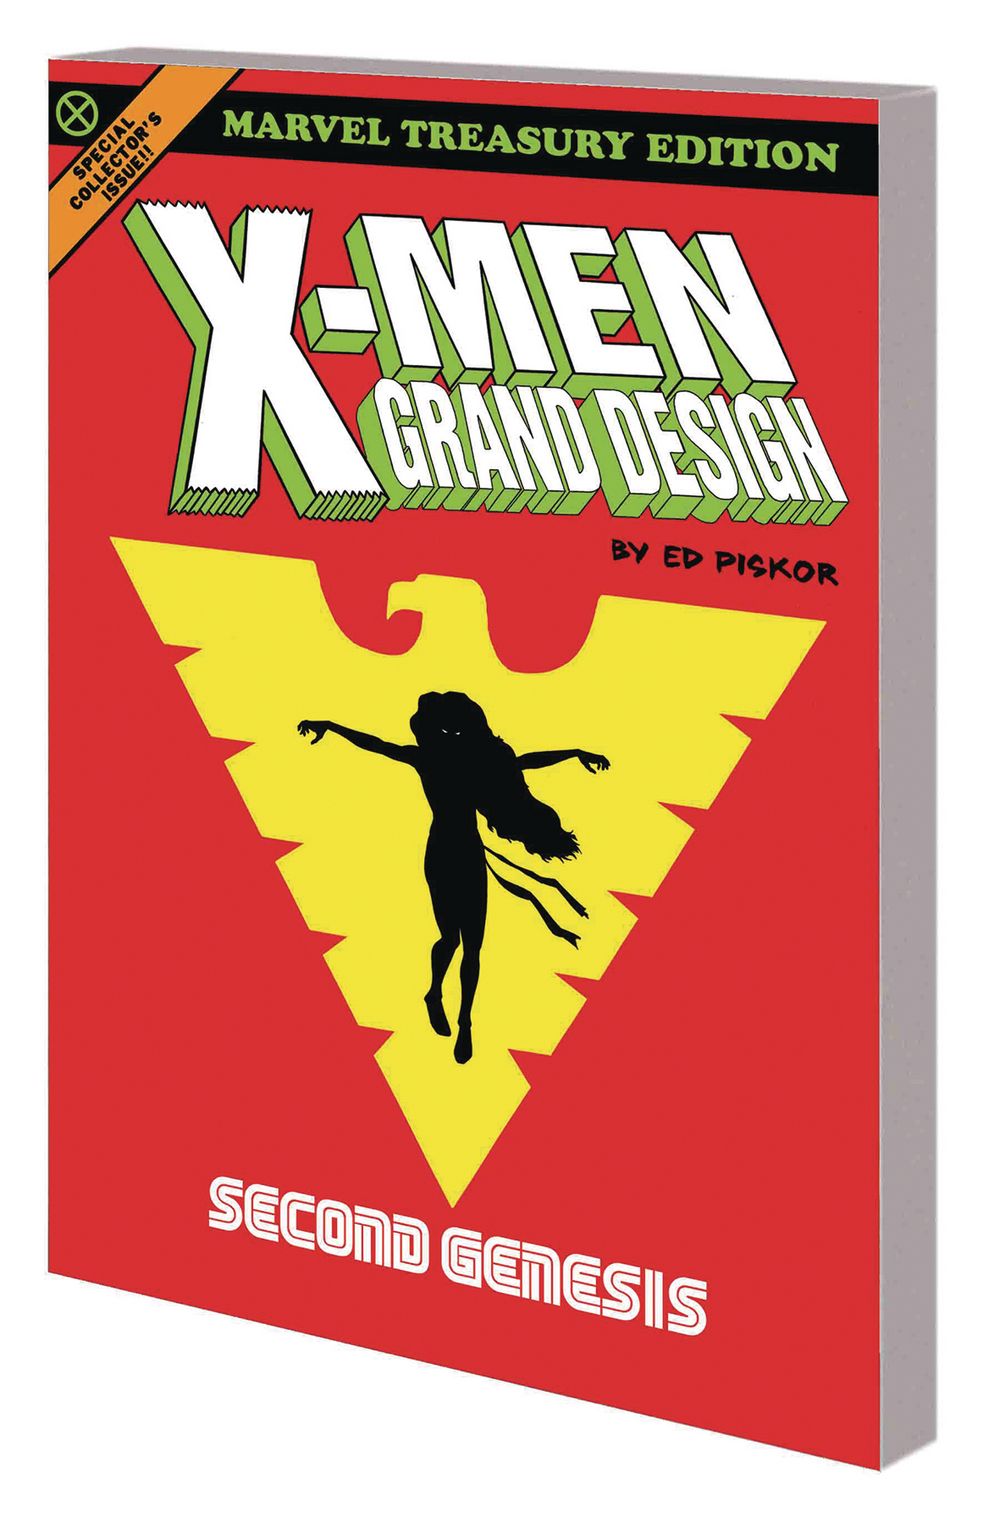 X-Men Grand Design TP VOL 02 Second Genesis